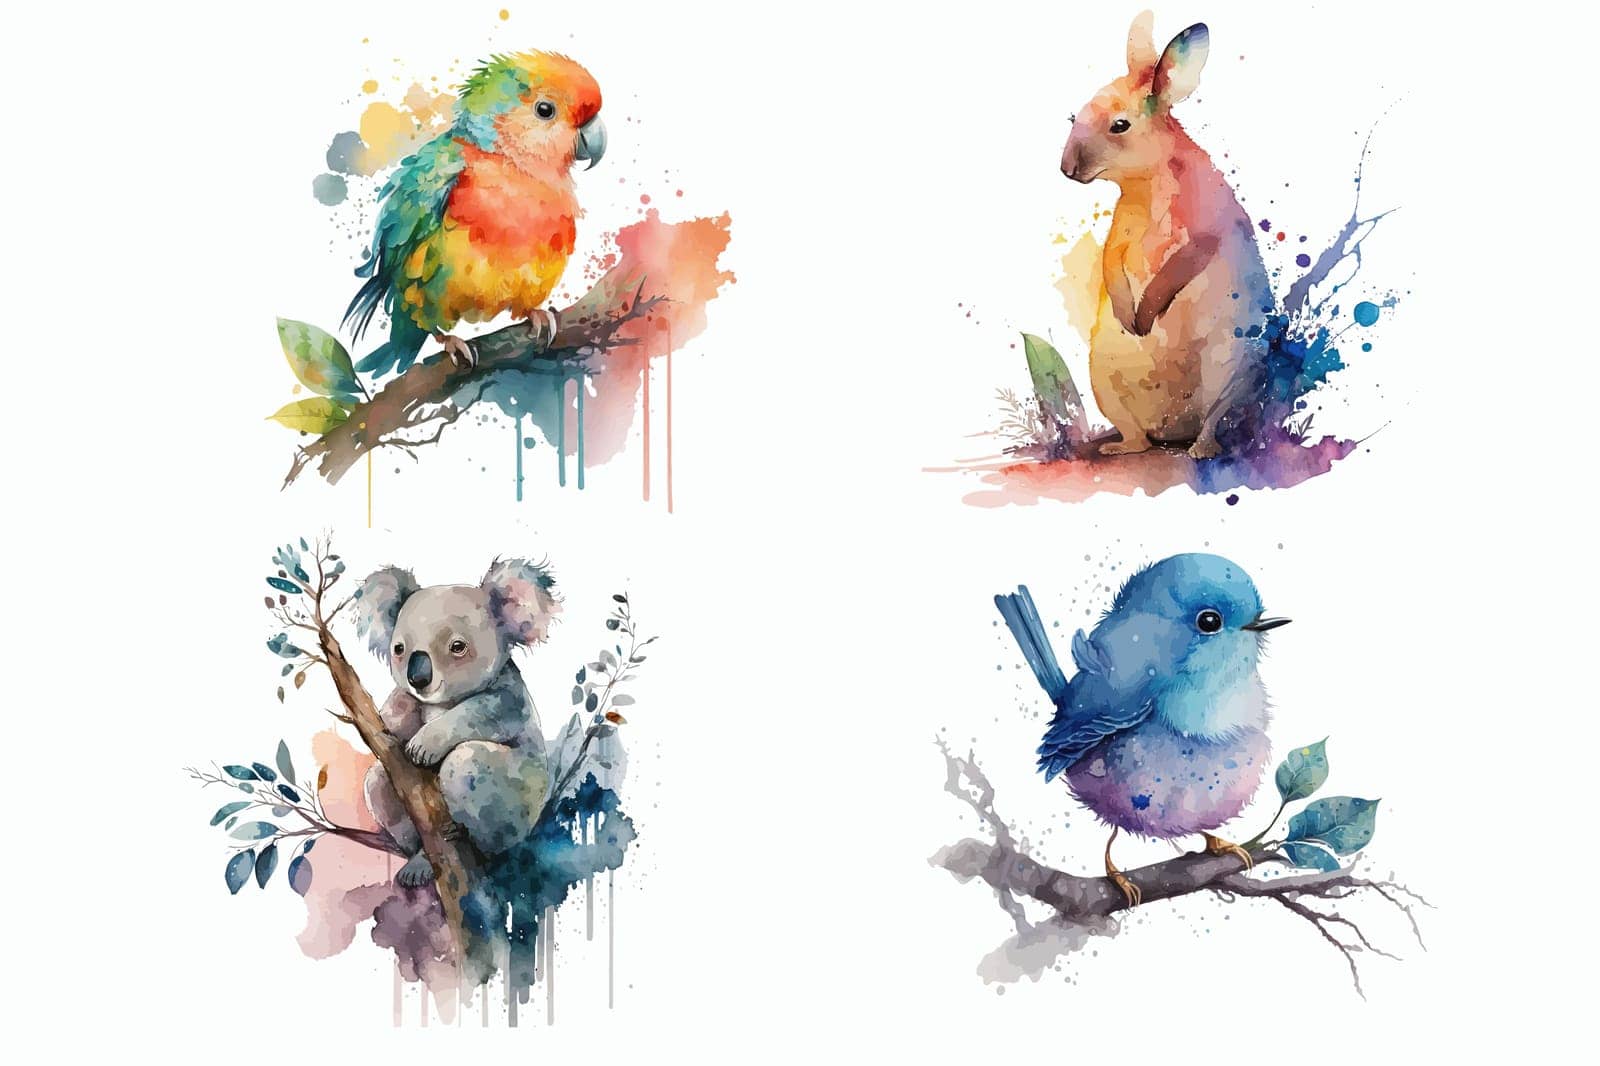 Koala, kangaroo, little bird, parrot in watercolor style. Isolated vector illustration